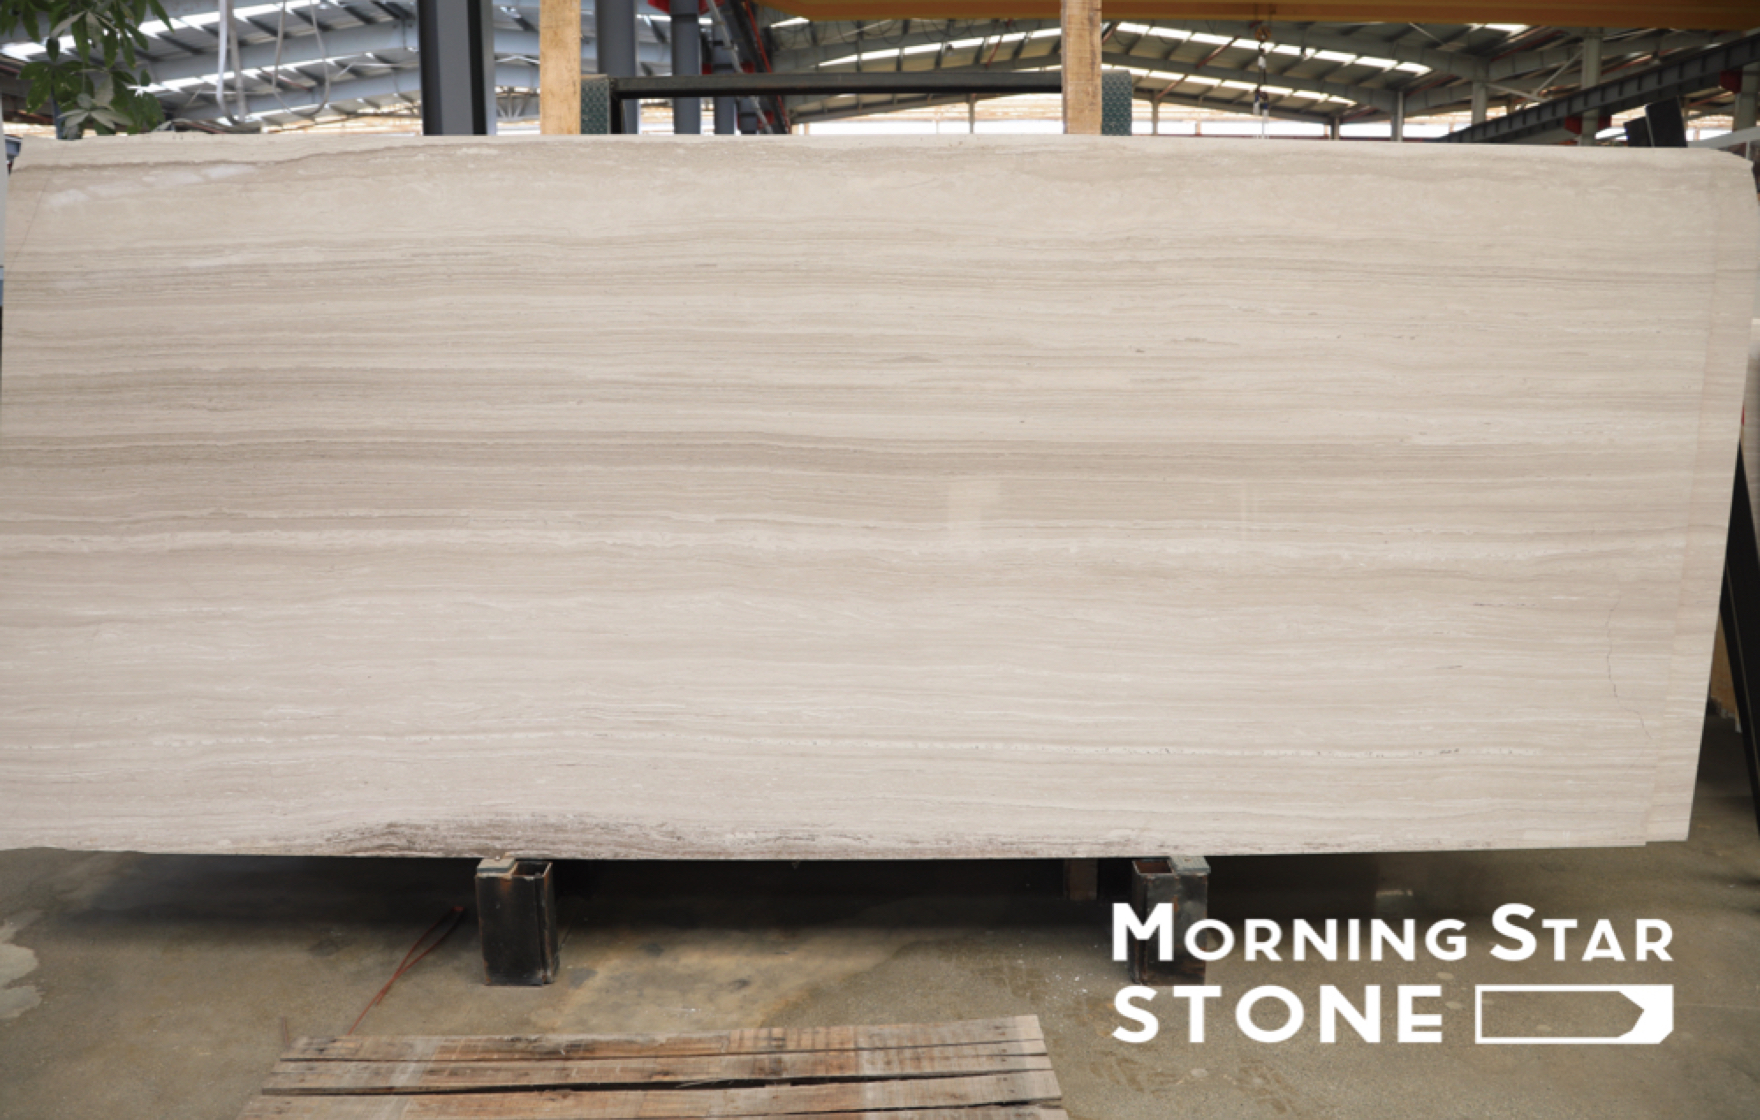 Փոխակերպեք ձեր տունը Morningstar Stone-ից սպիտակ փայտյա մարմարի հավերժական գեղեցկությամբ